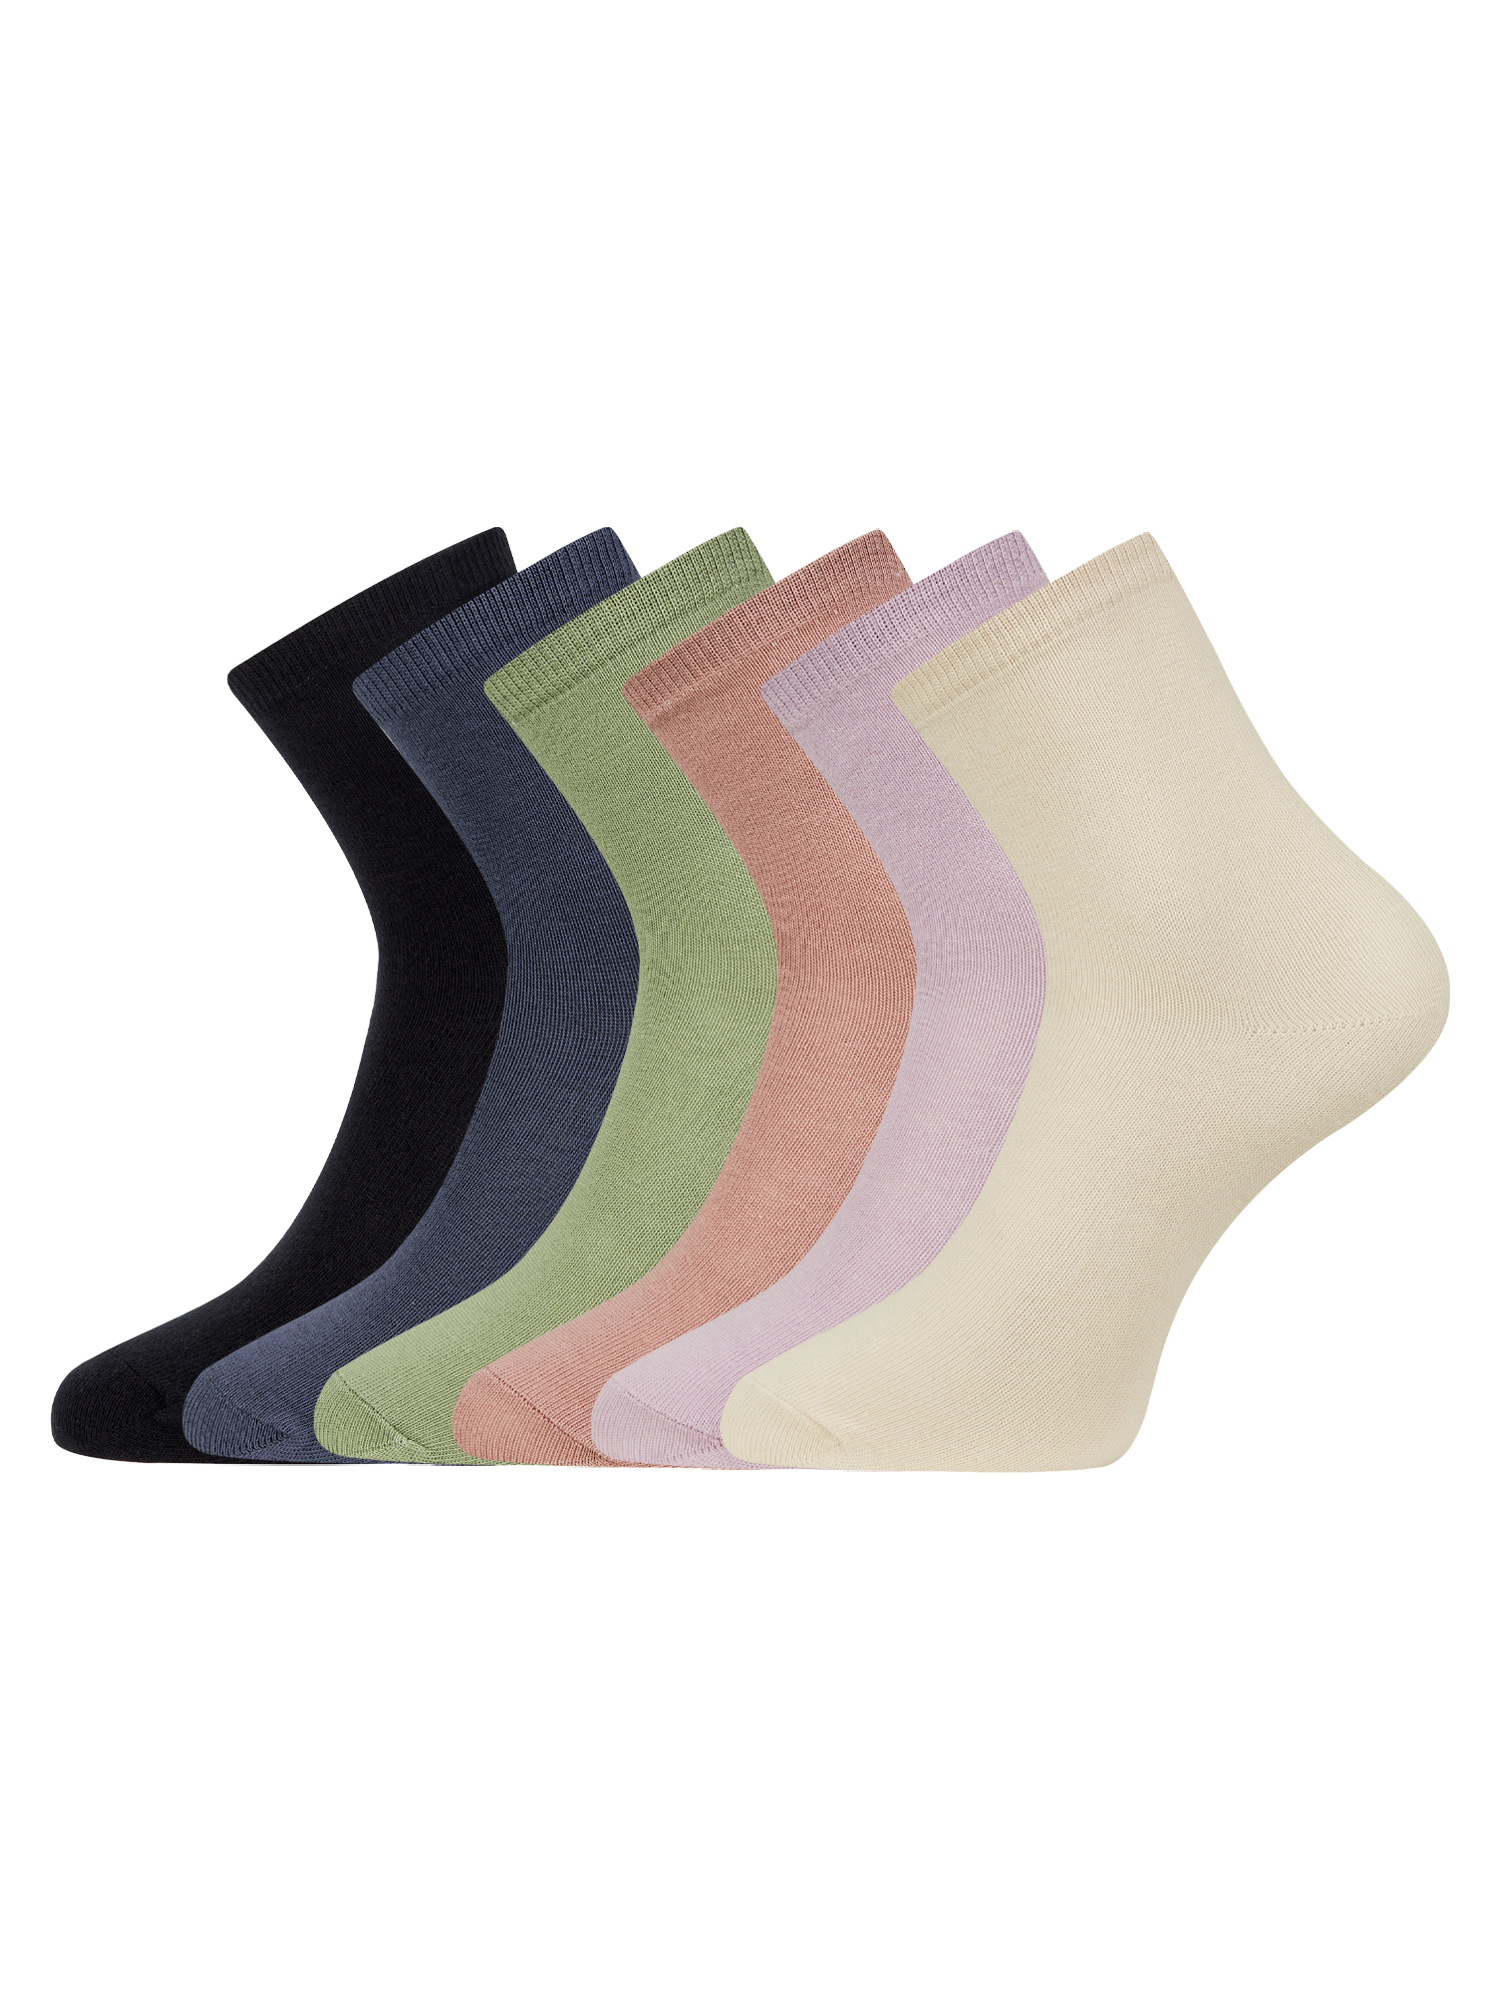 Комплект носков женских oodji 57102466T6 разноцветных 38-40